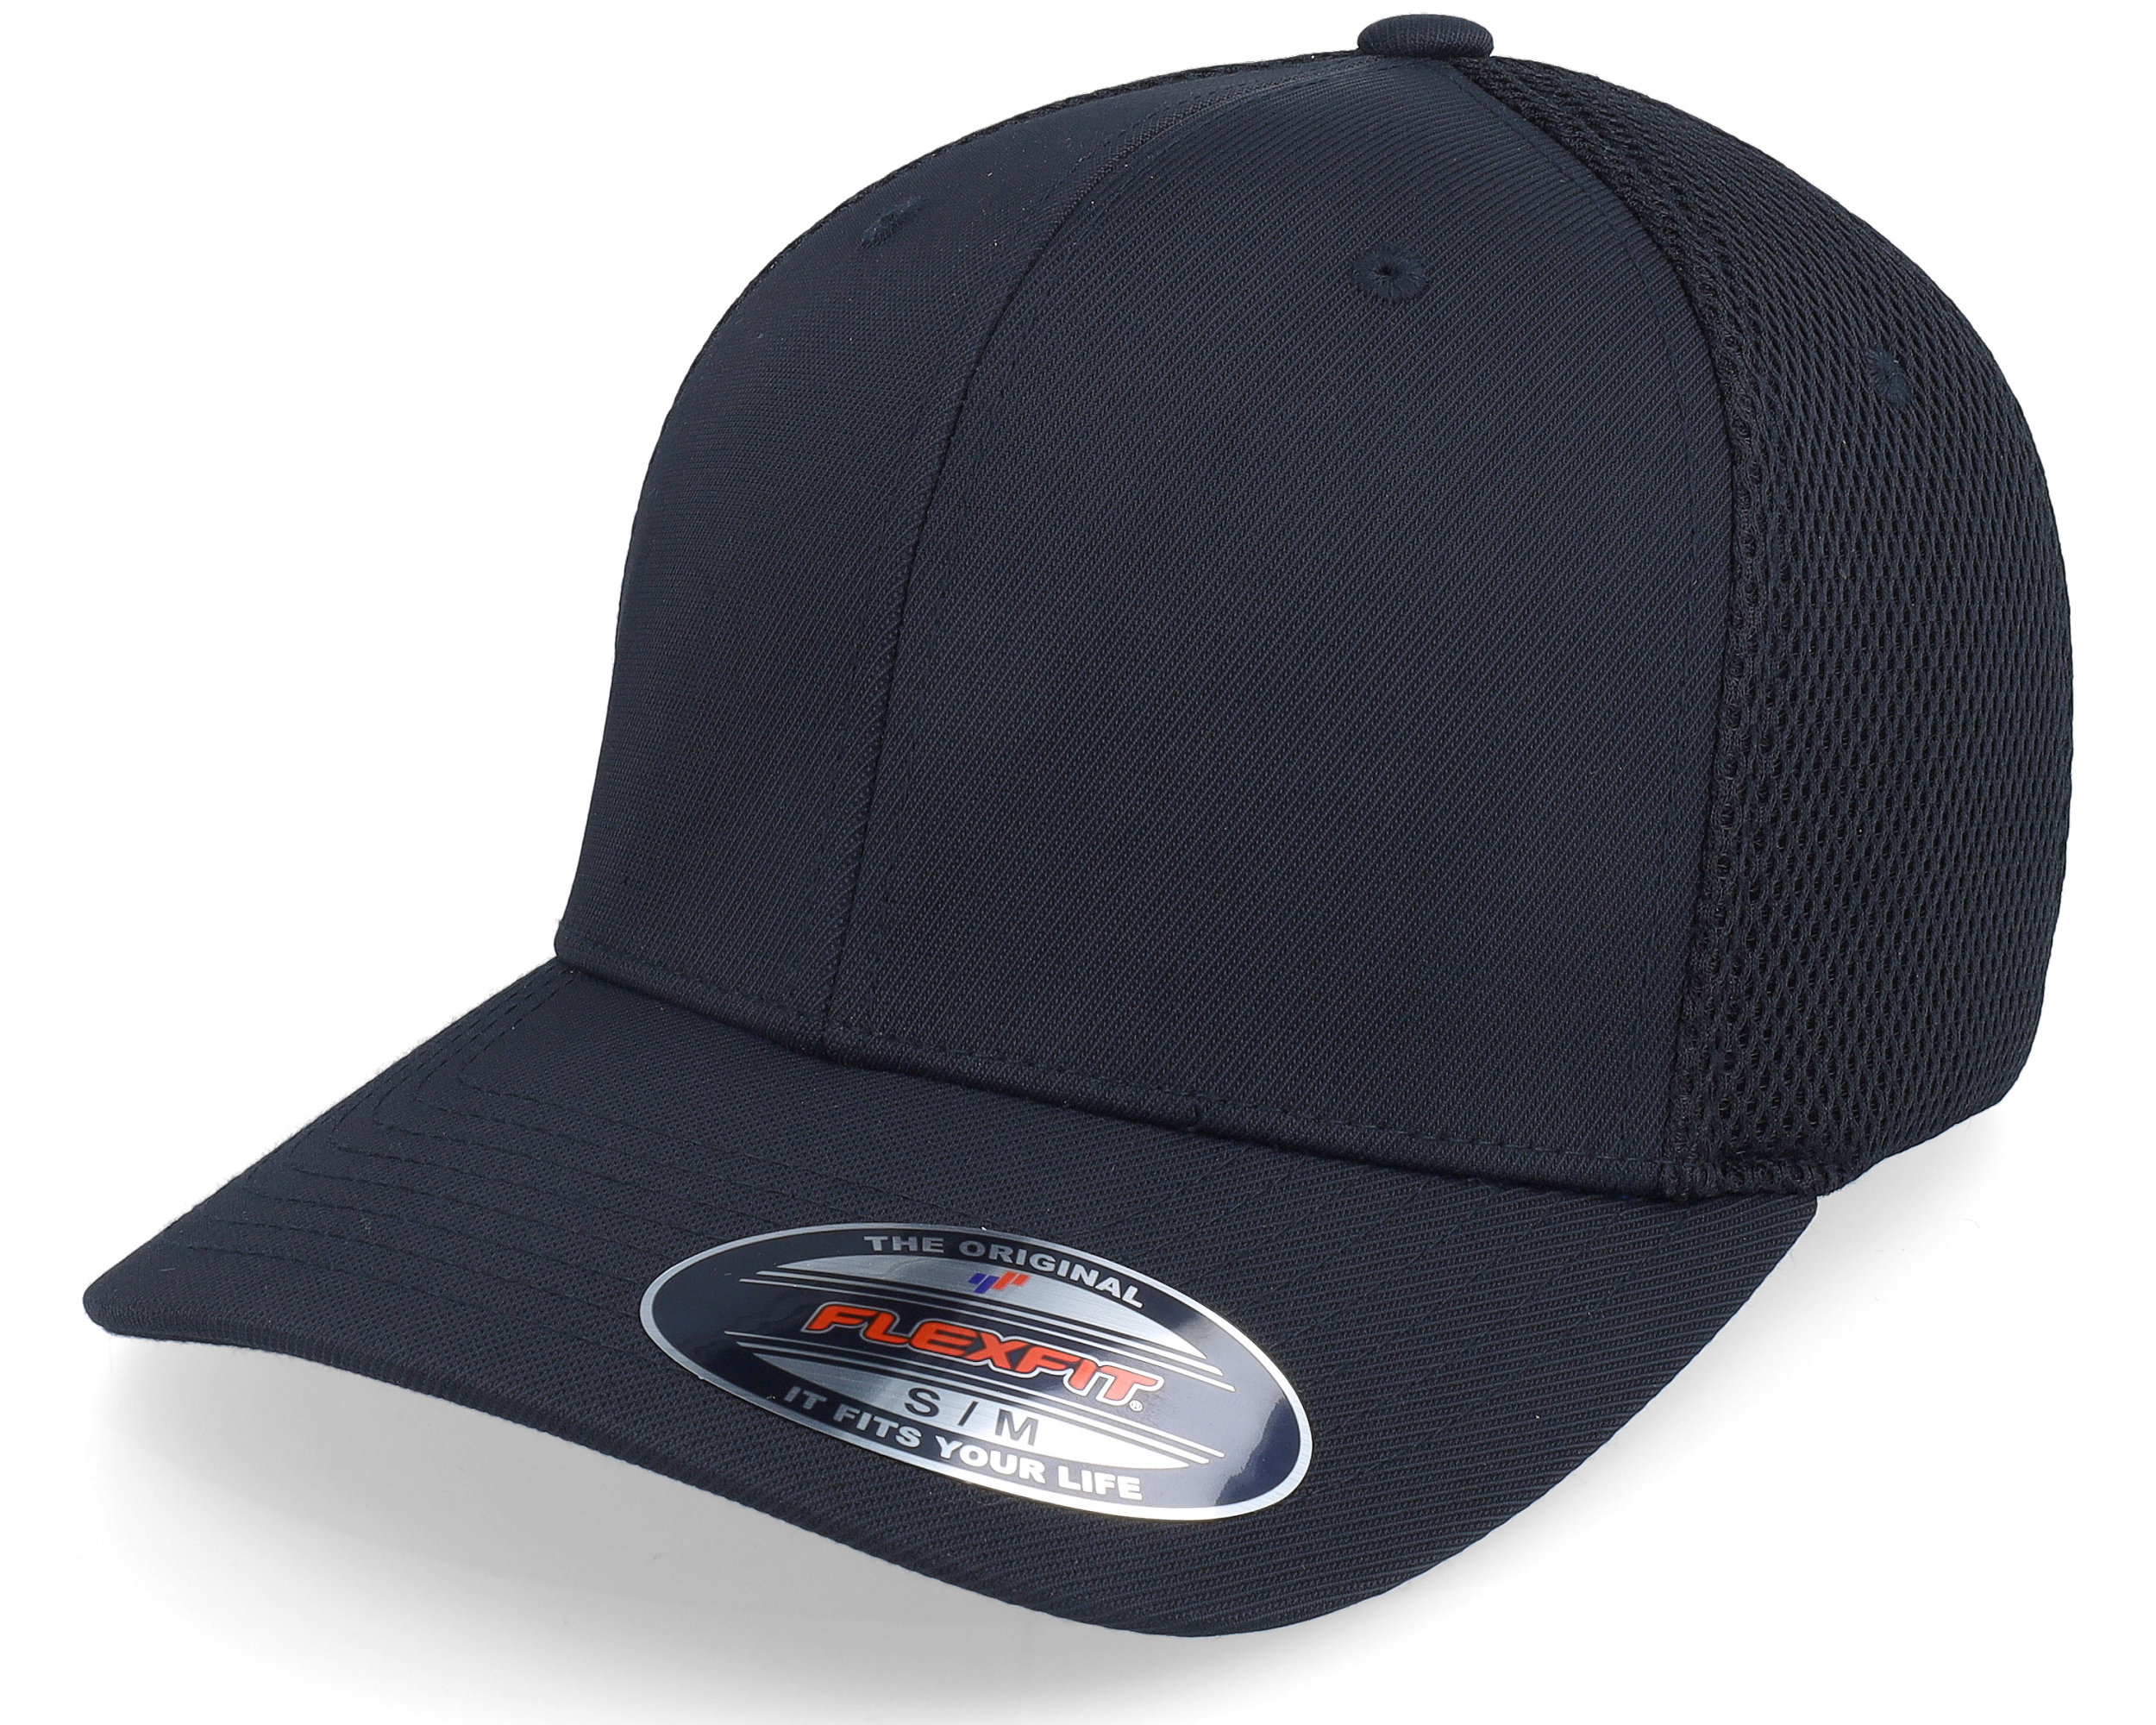 Mesh - Tactel Black Flexfit cap